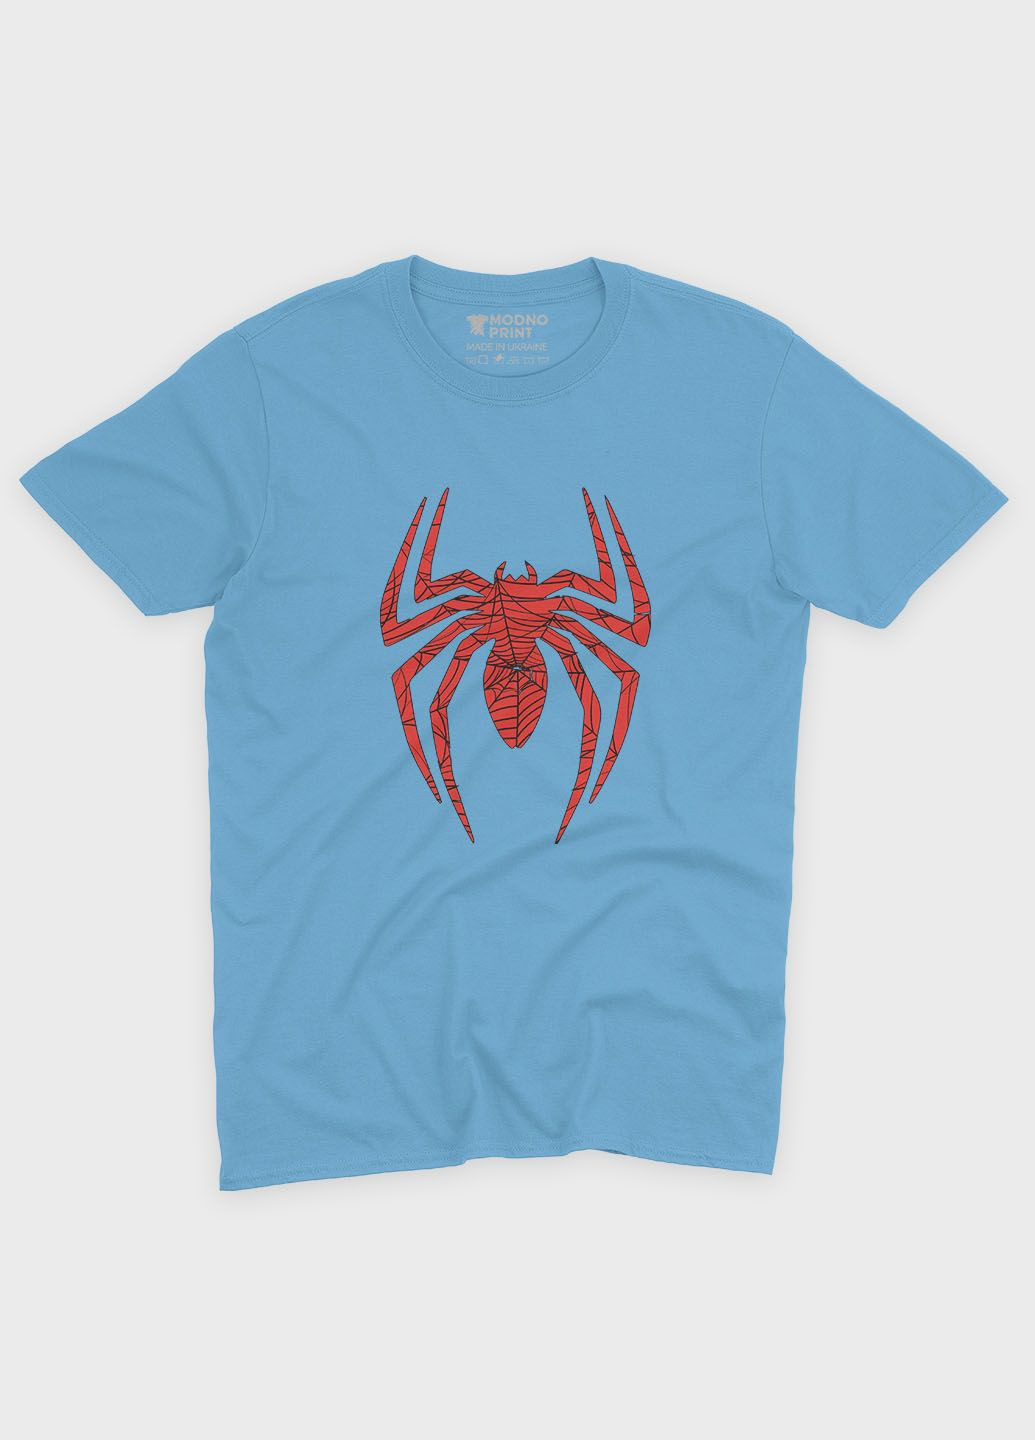 Голубая демисезонная футболка для мальчика с принтом супергероя - человек-паук (ts001-1-lbl-006-014-029-b) Modno